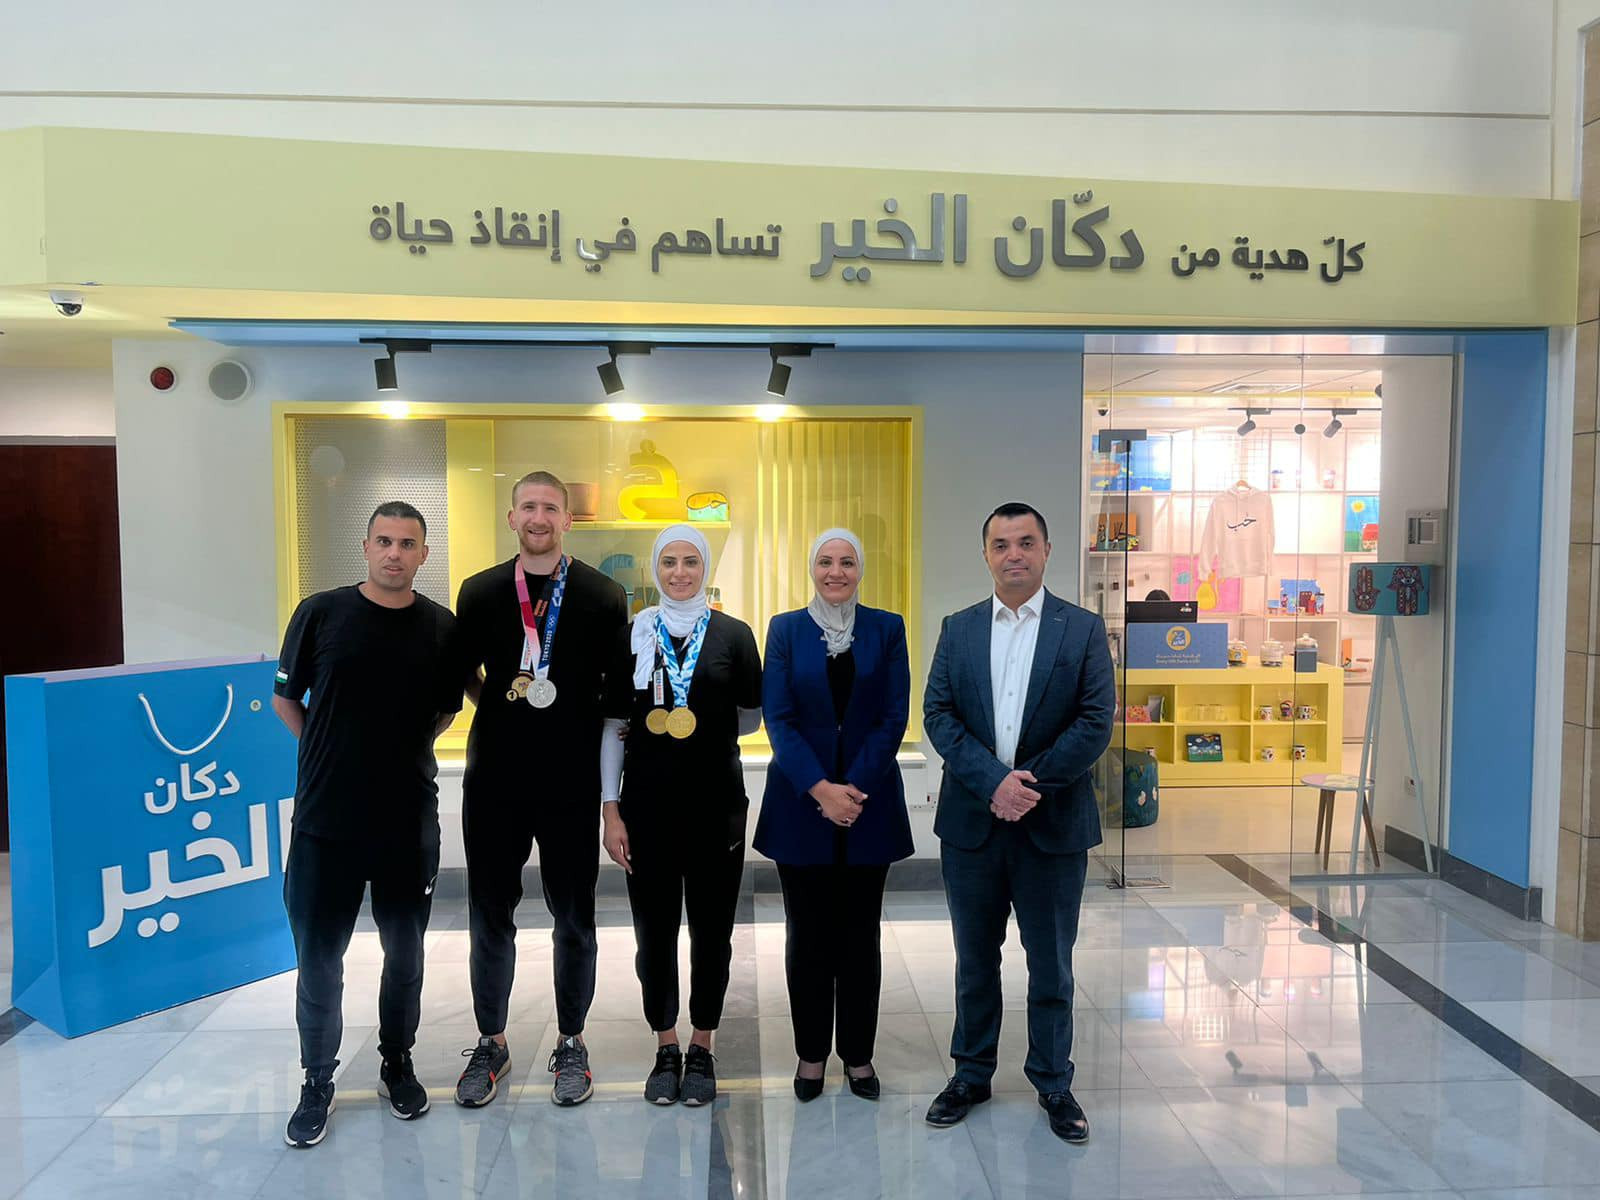 Jordanian taekwondo stars visit cancer centre in Amman